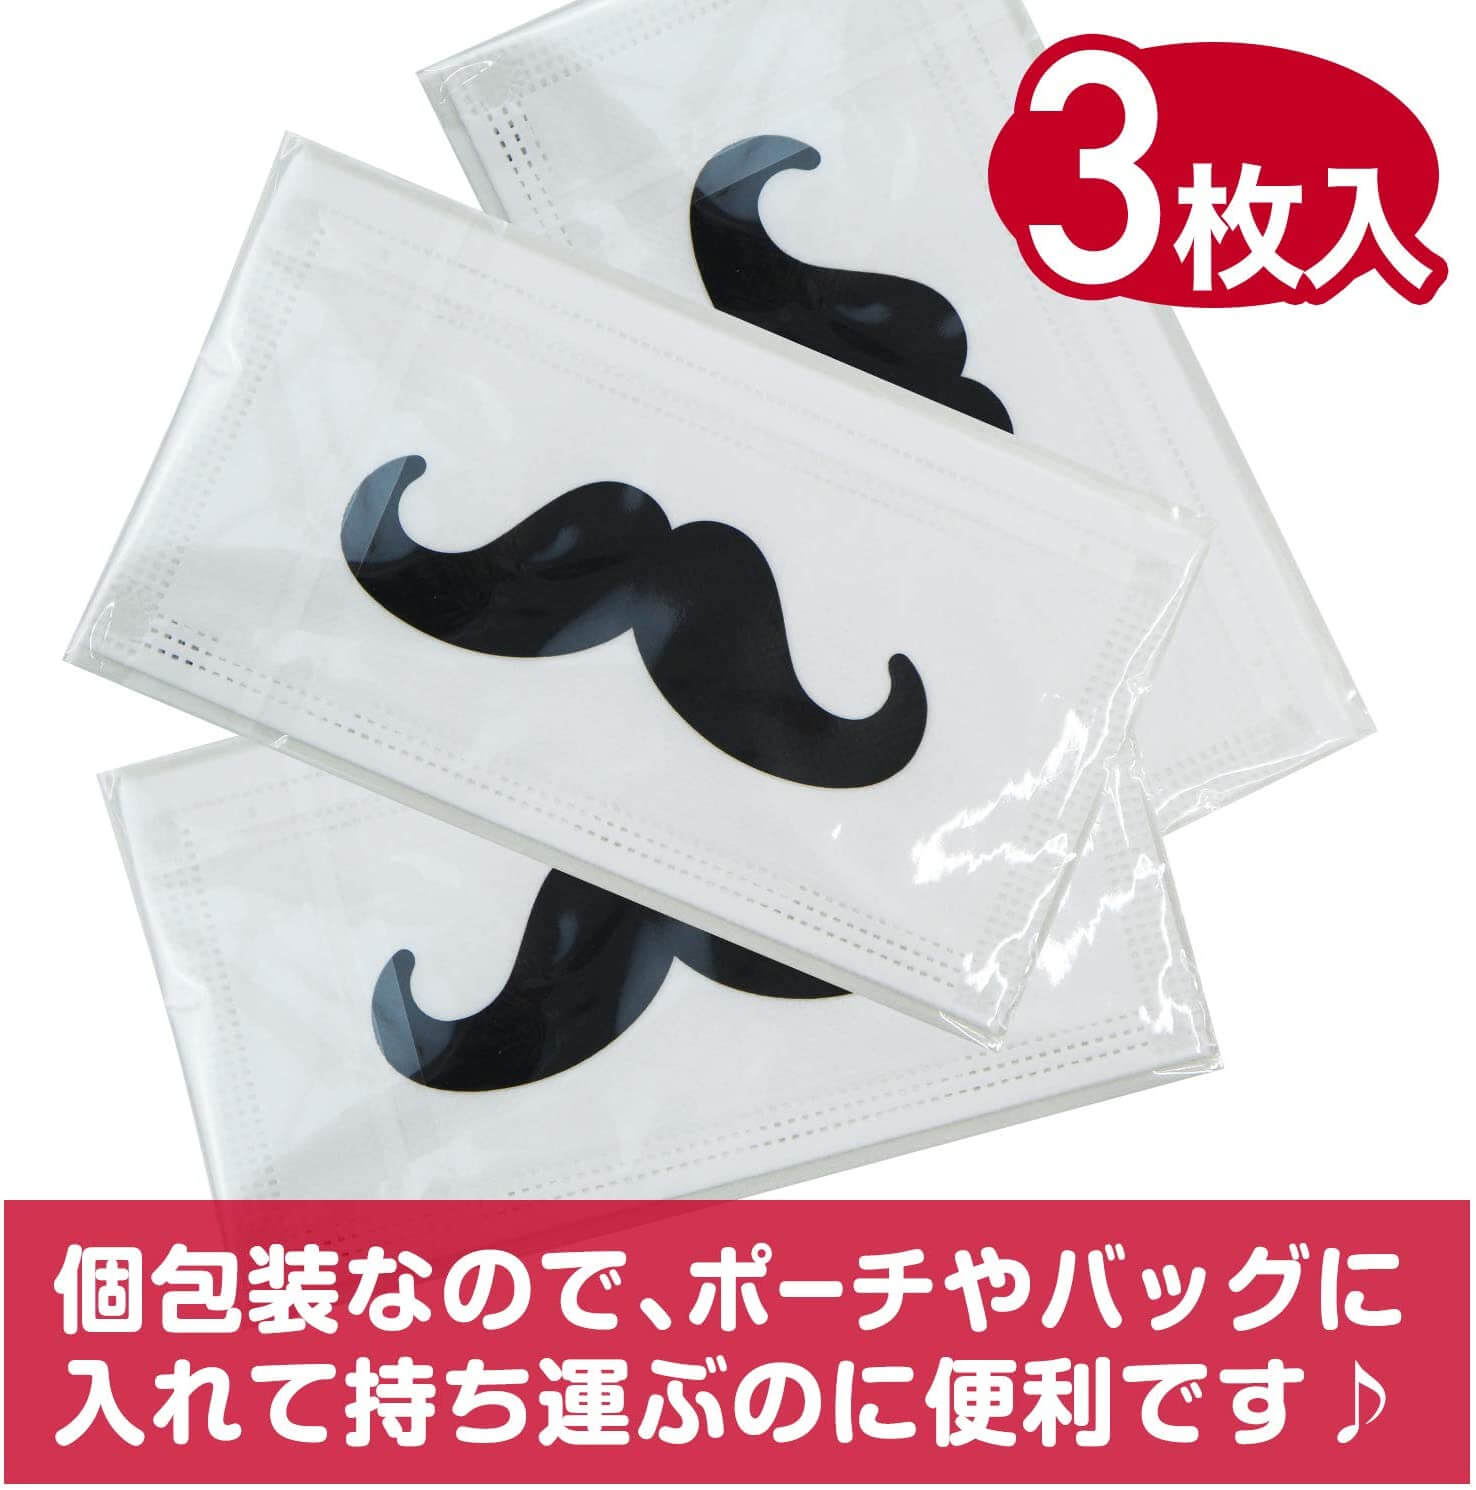 ヒゲ柄マスク 3層不織布マスク 個別包装3枚パック